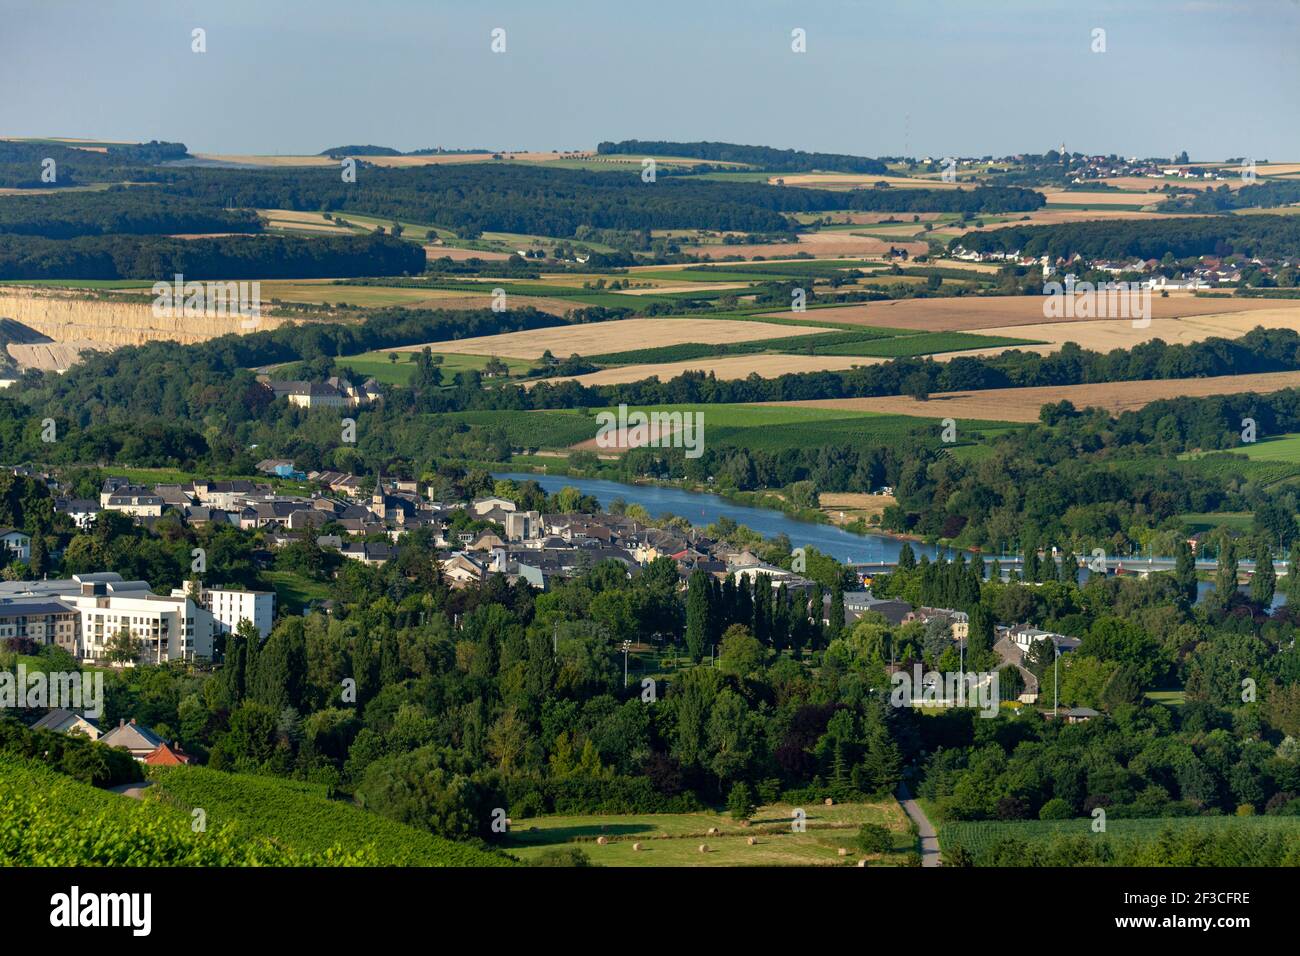 Luxembourg : la ville de Remich, dans la vallée de la Moselle. Vue d'ensemble du paysage et de la ville avec la campagne environnante et la Moselle Banque D'Images